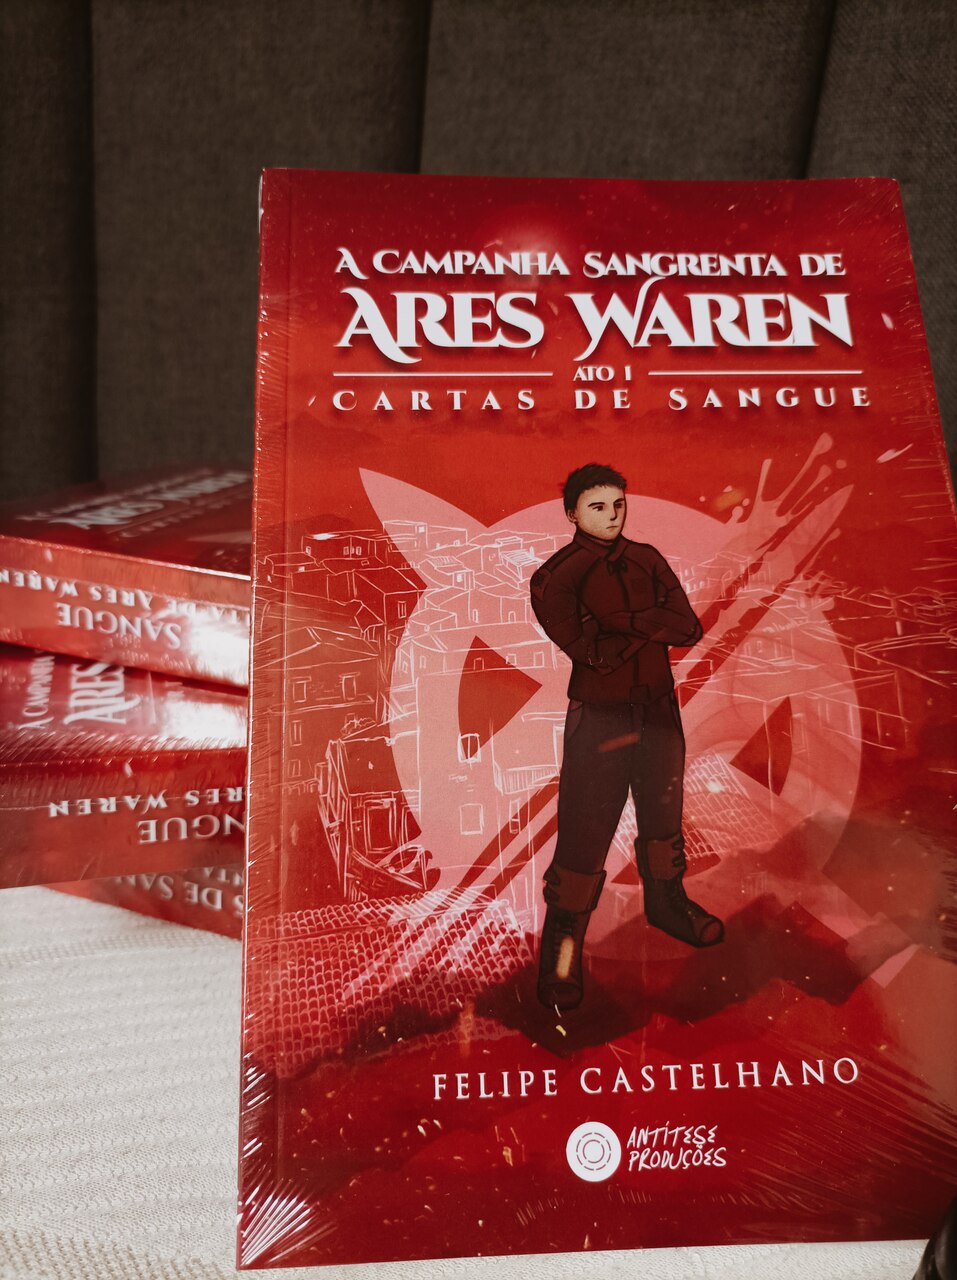 Imagem do livro "A campanha Sangrenta de Ares Waren- Ato 1- Cartas de sangue", de Felipe Castelhano, pela Editora UICLAP